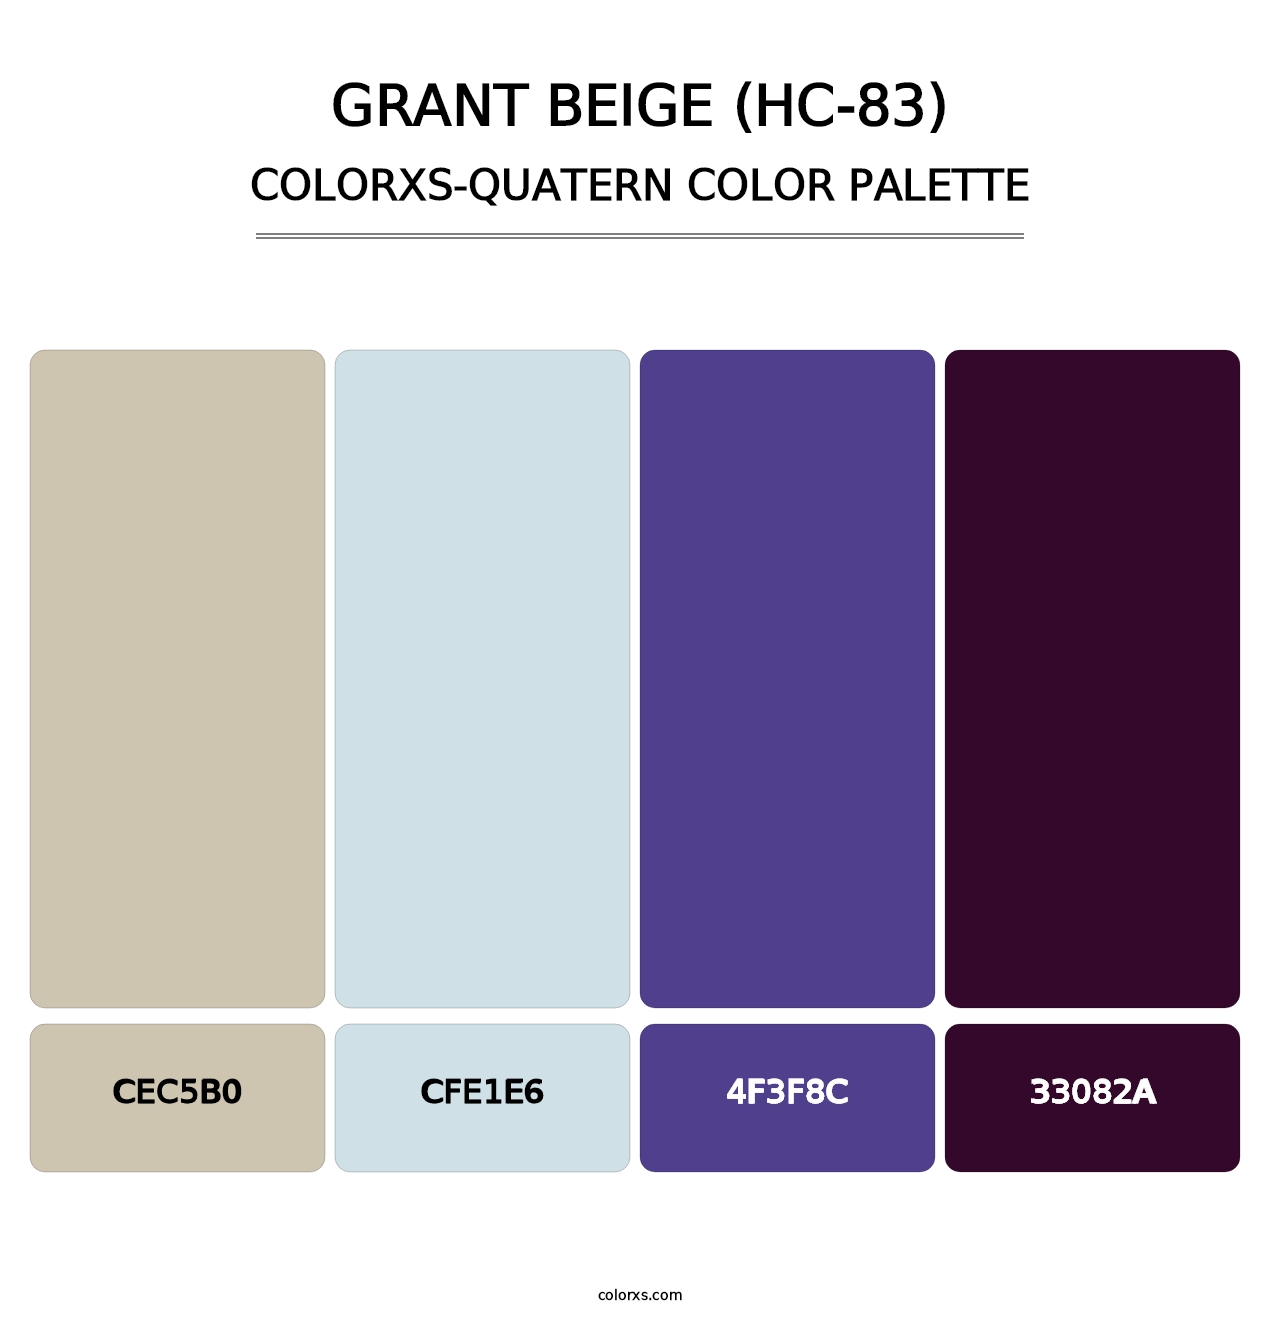 Grant Beige (HC-83) - Colorxs Quatern Palette